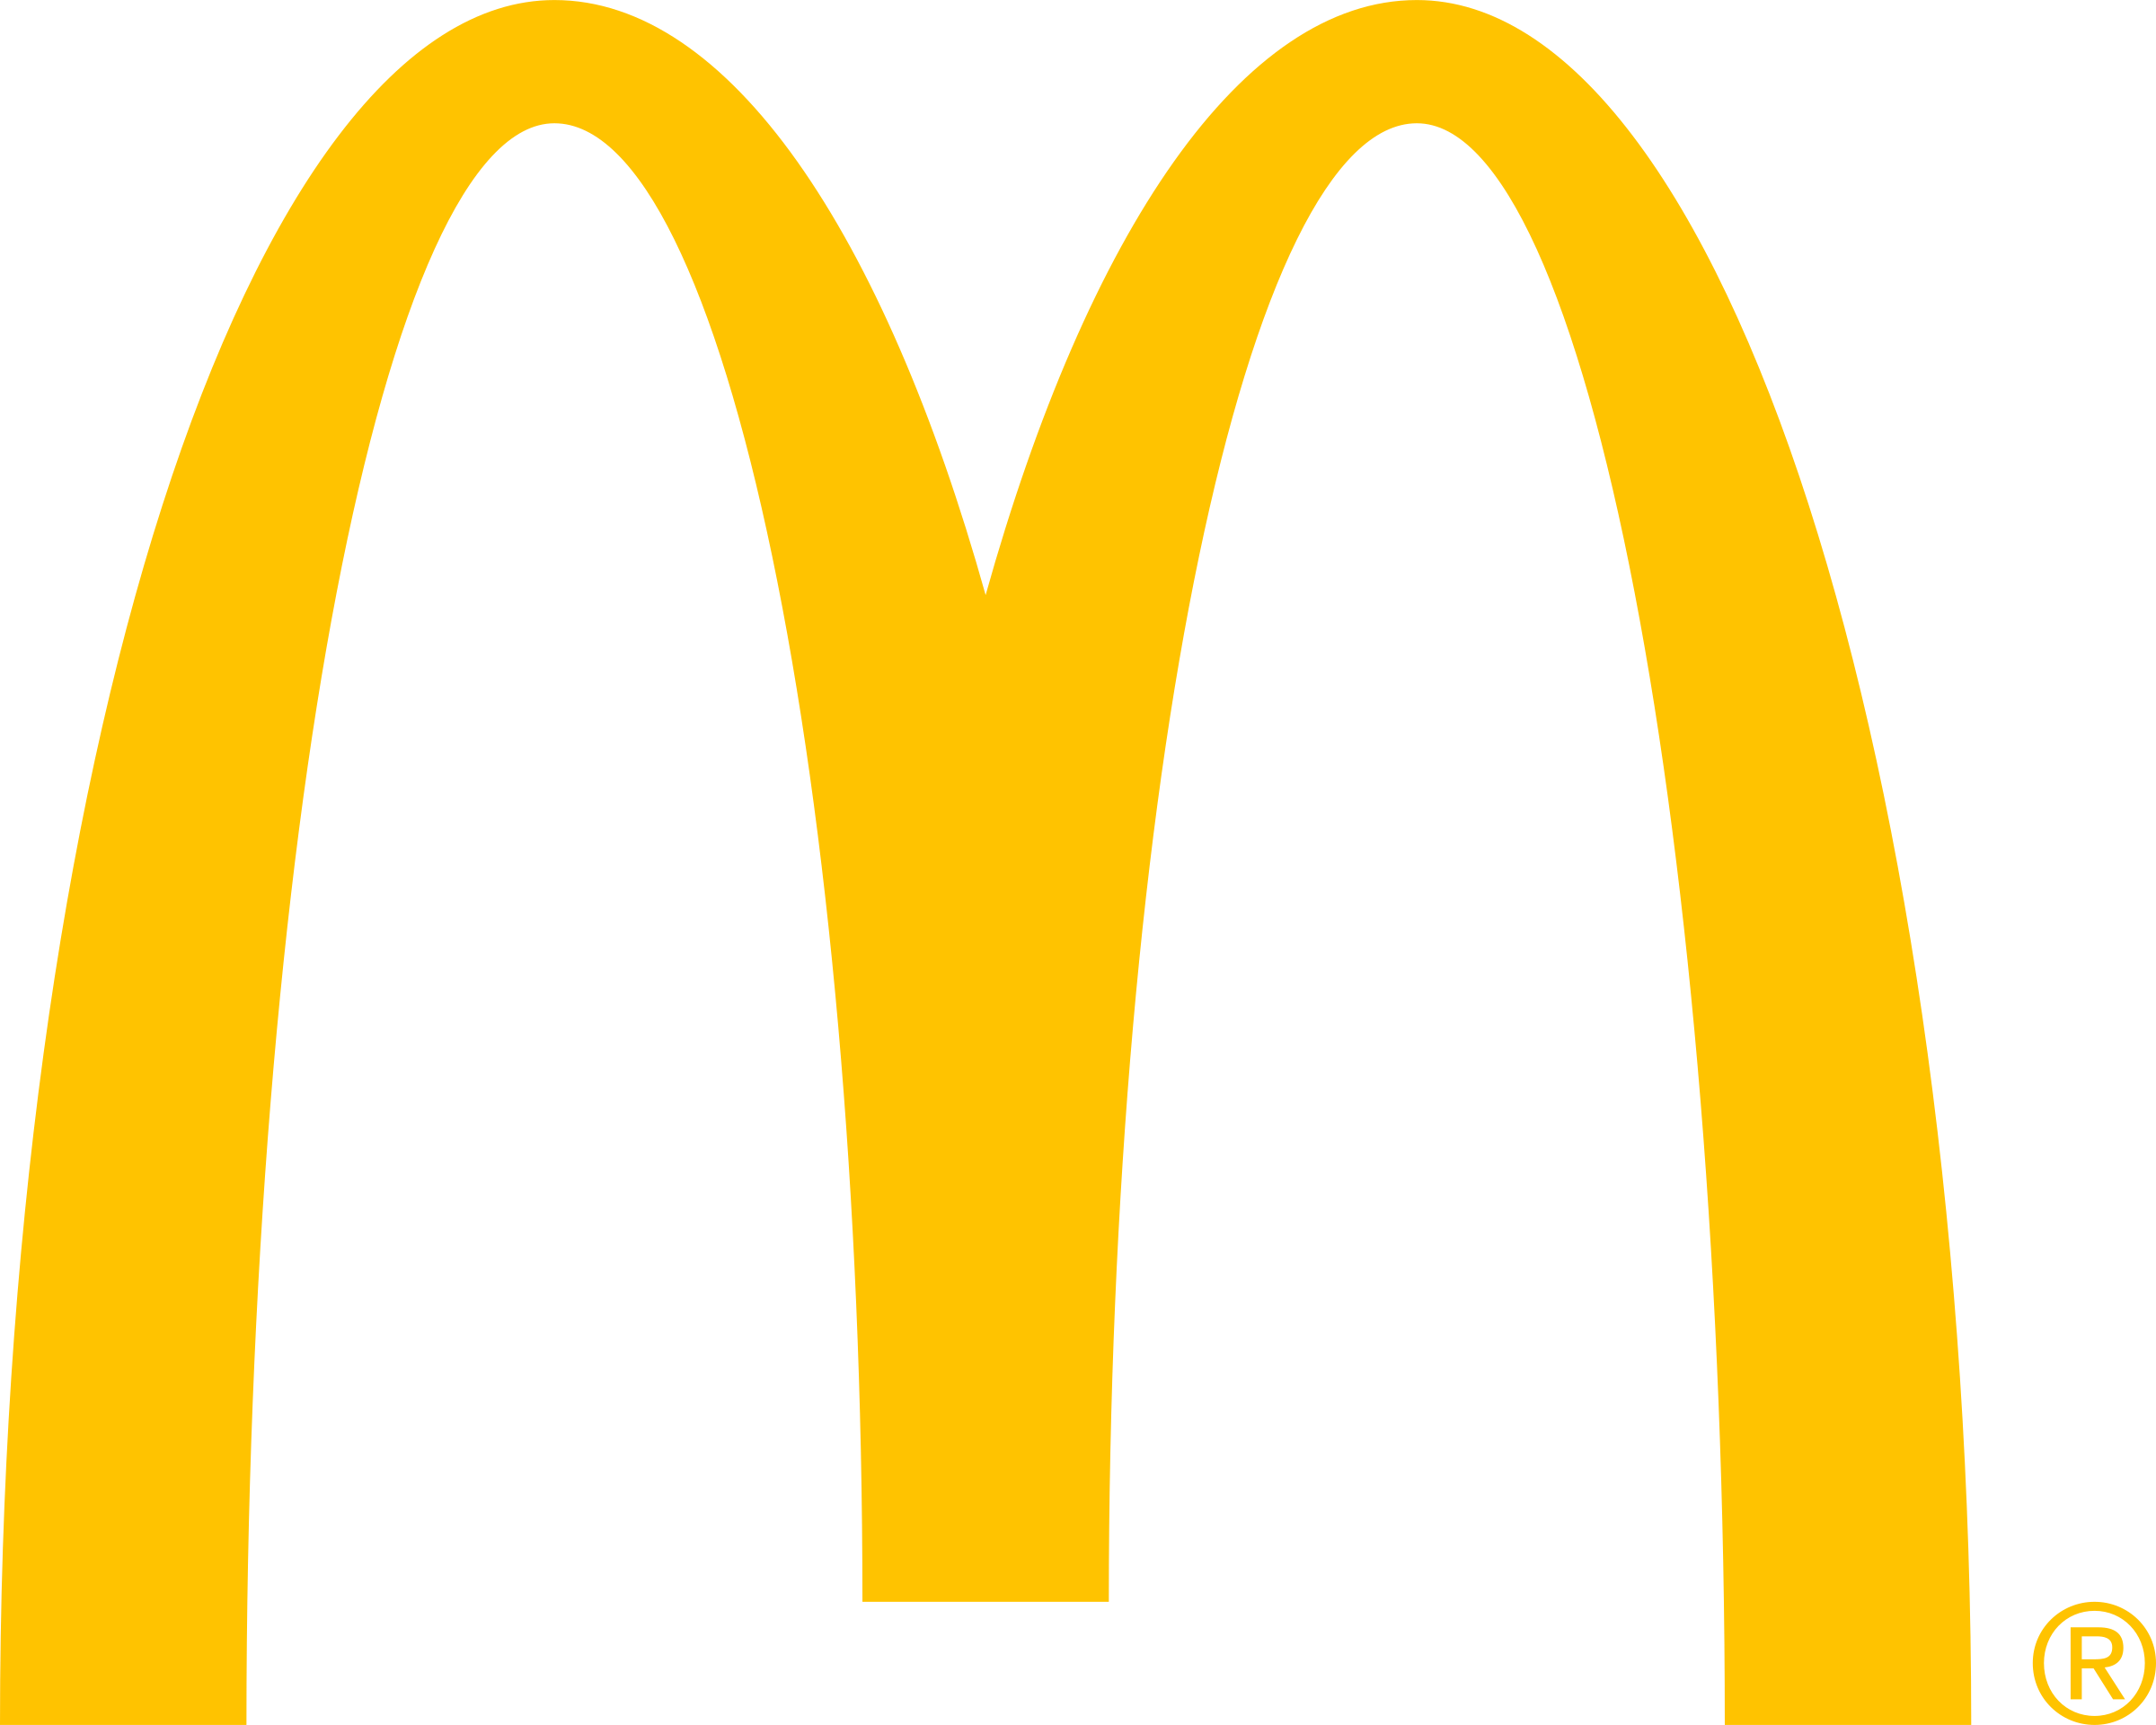 McDonalds logo PNG высококачественный образ